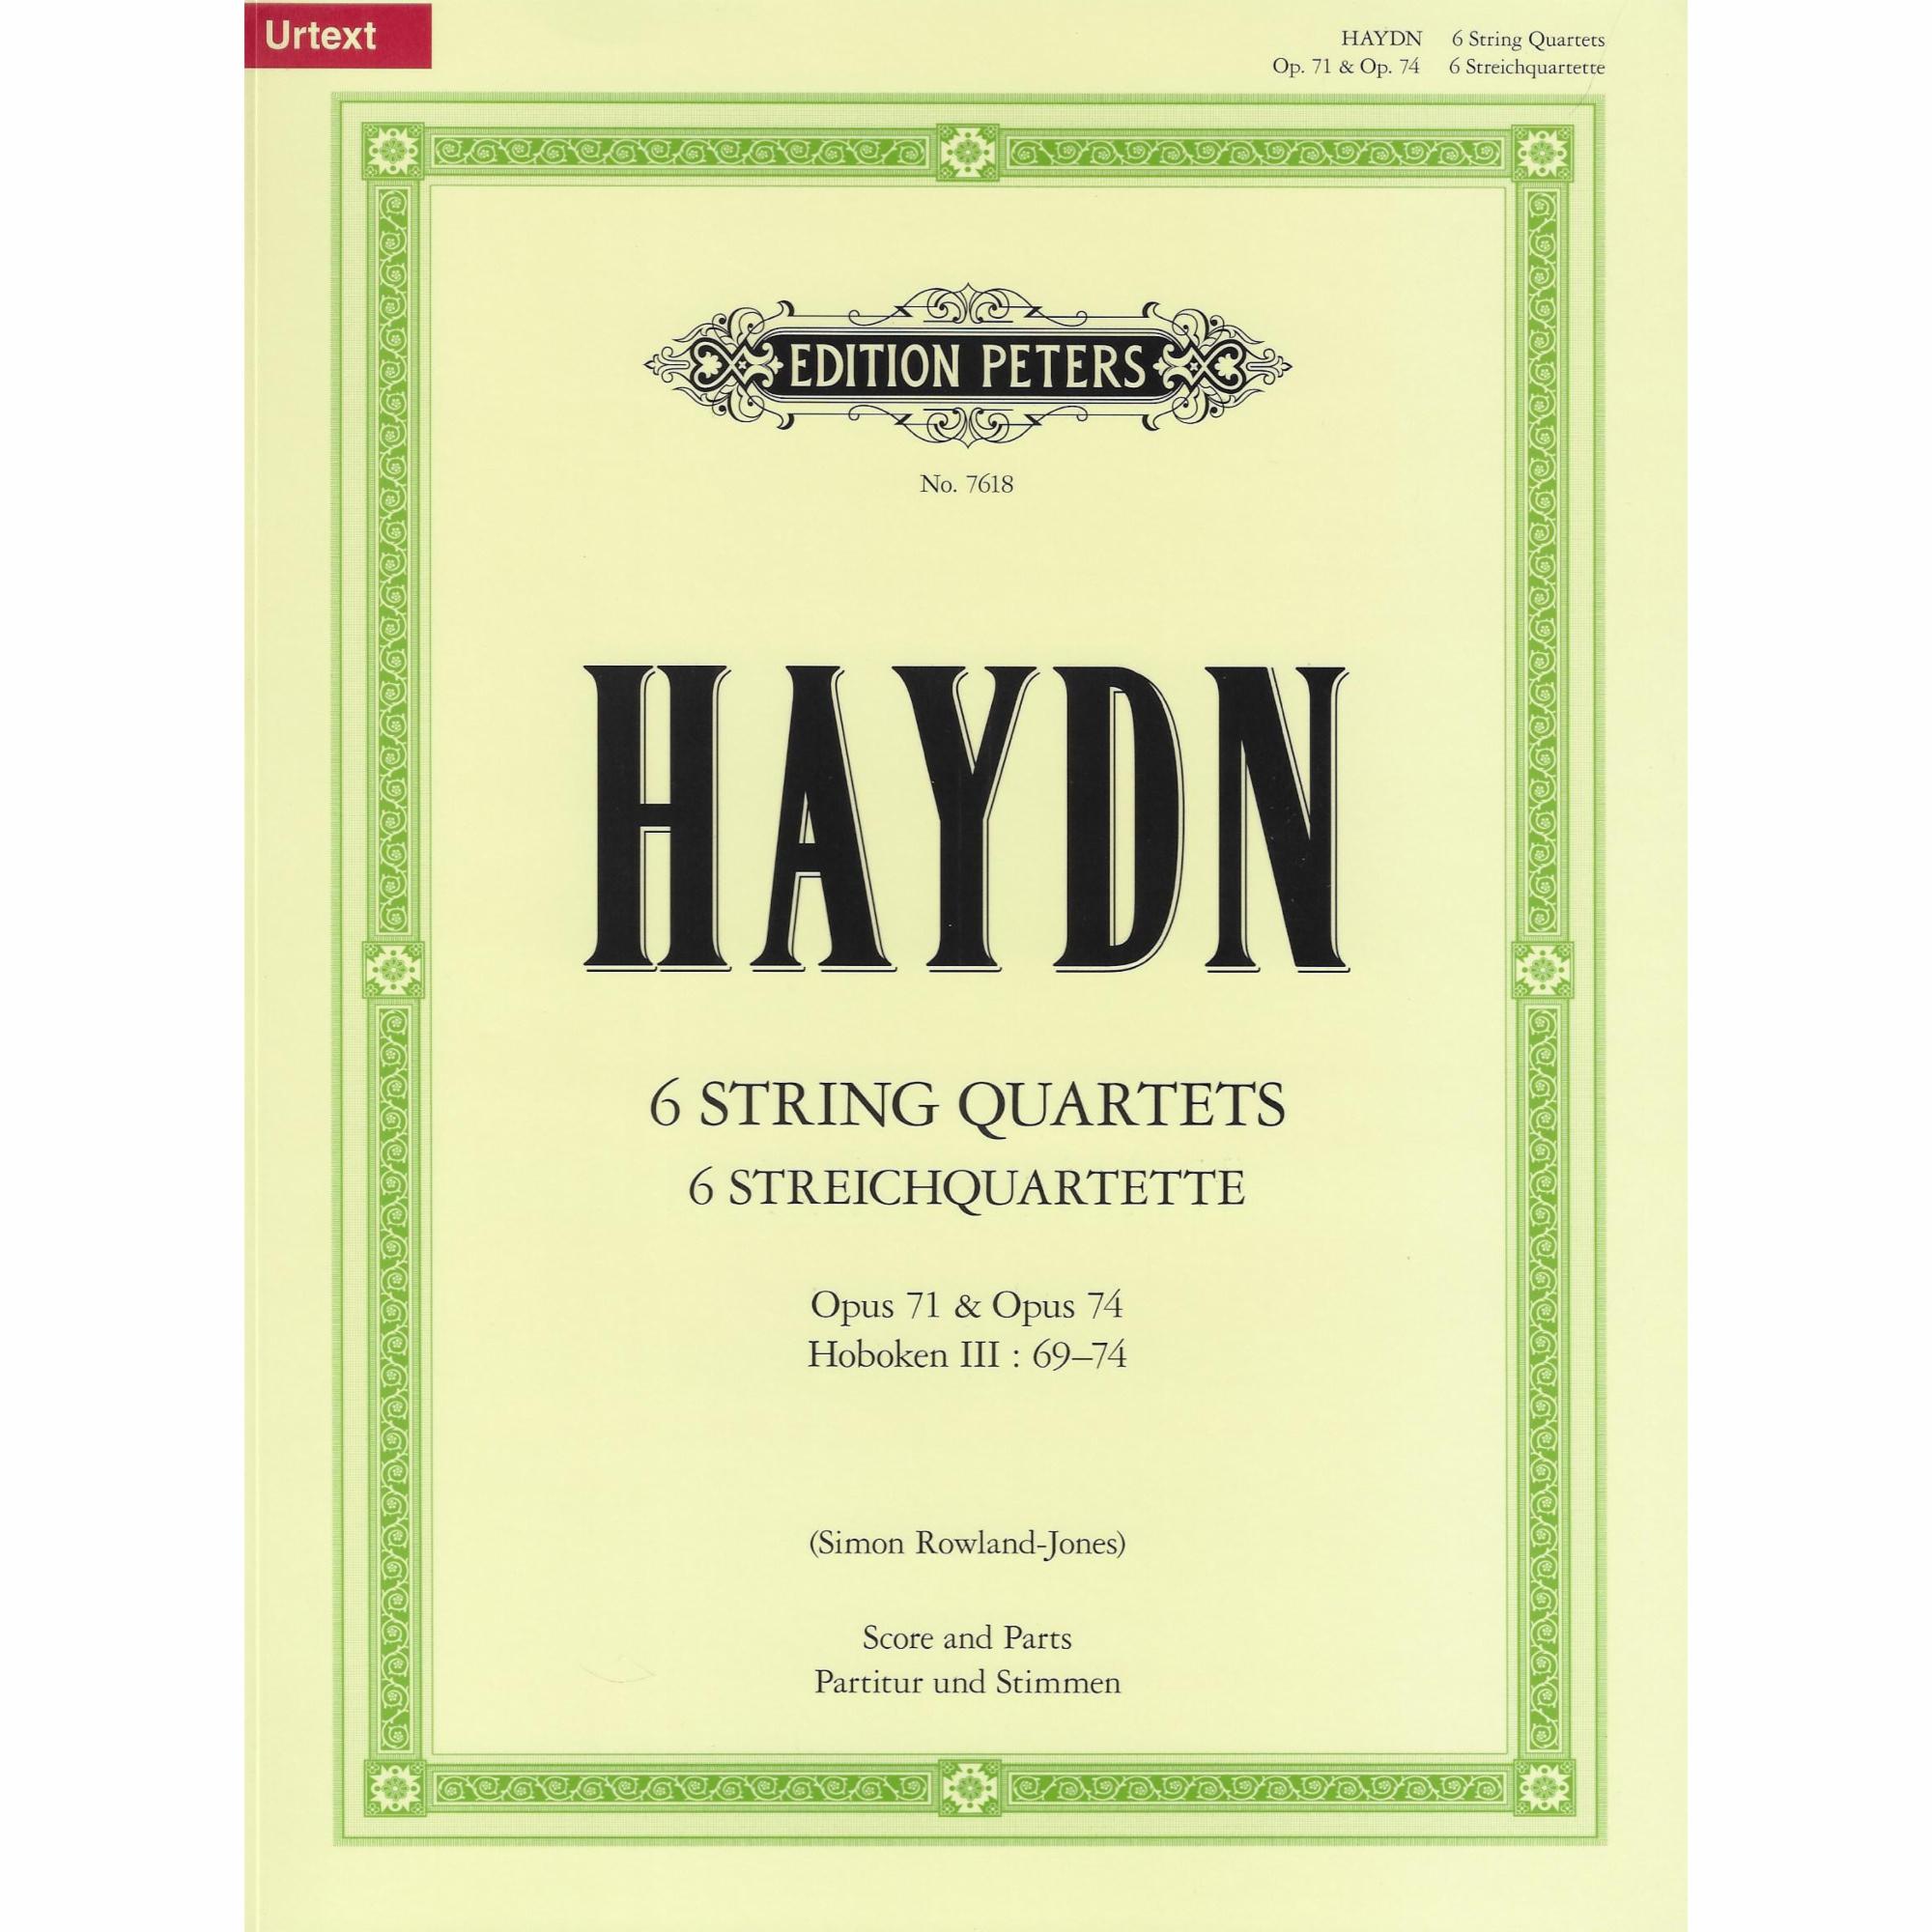 Haydn -- 6 String Quartets, Opp. 71 & 74